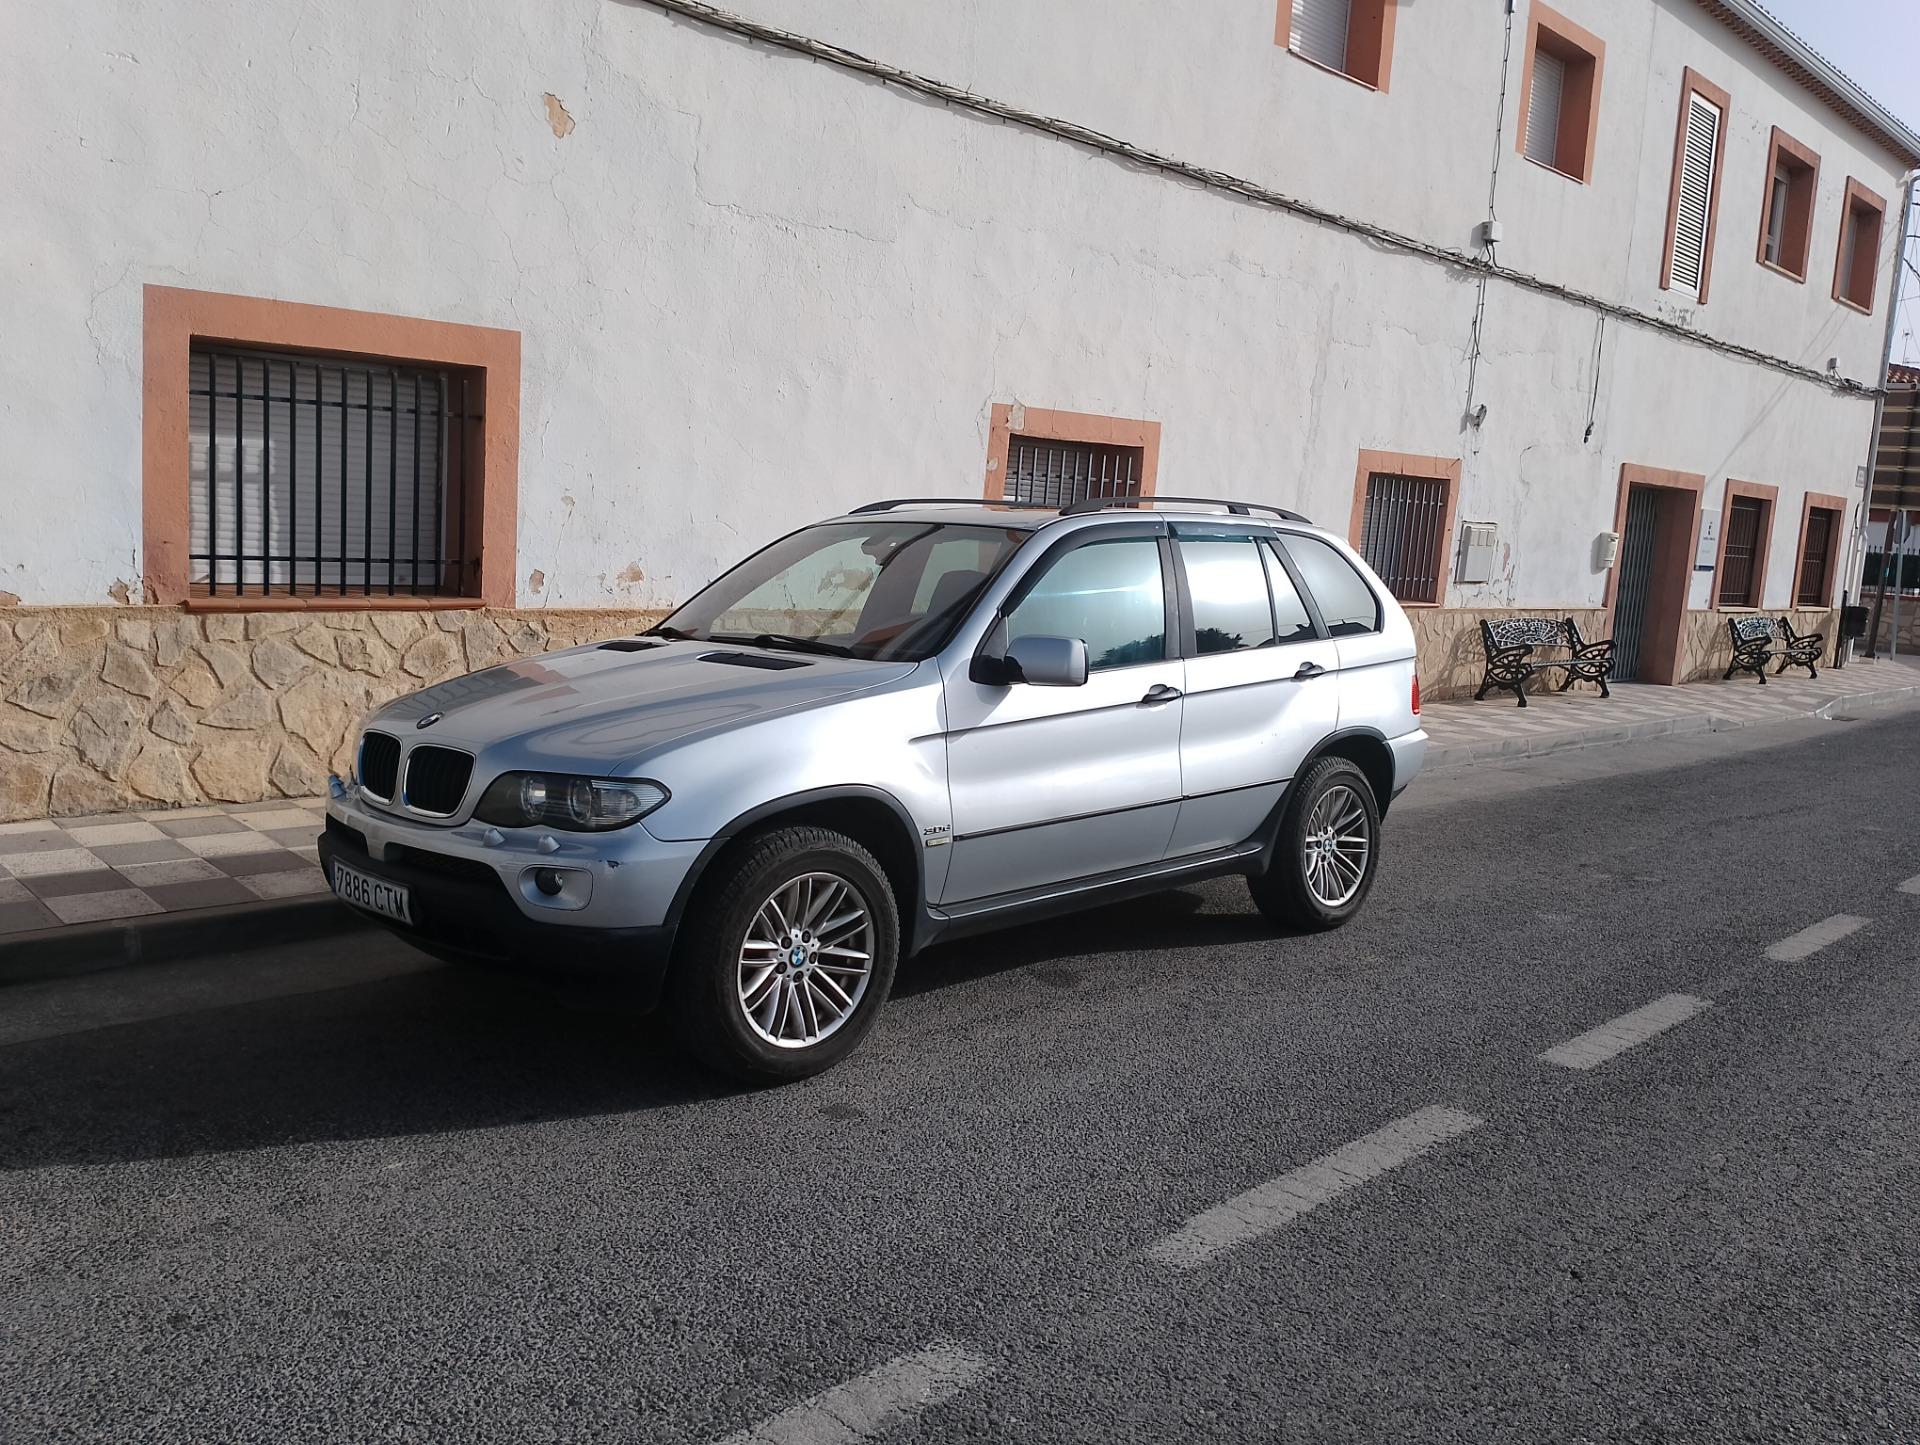 Foto 2 de BMW X5 vendo o cambio x mini,Audi Q7 7 plazas o furgoneta tipo vito